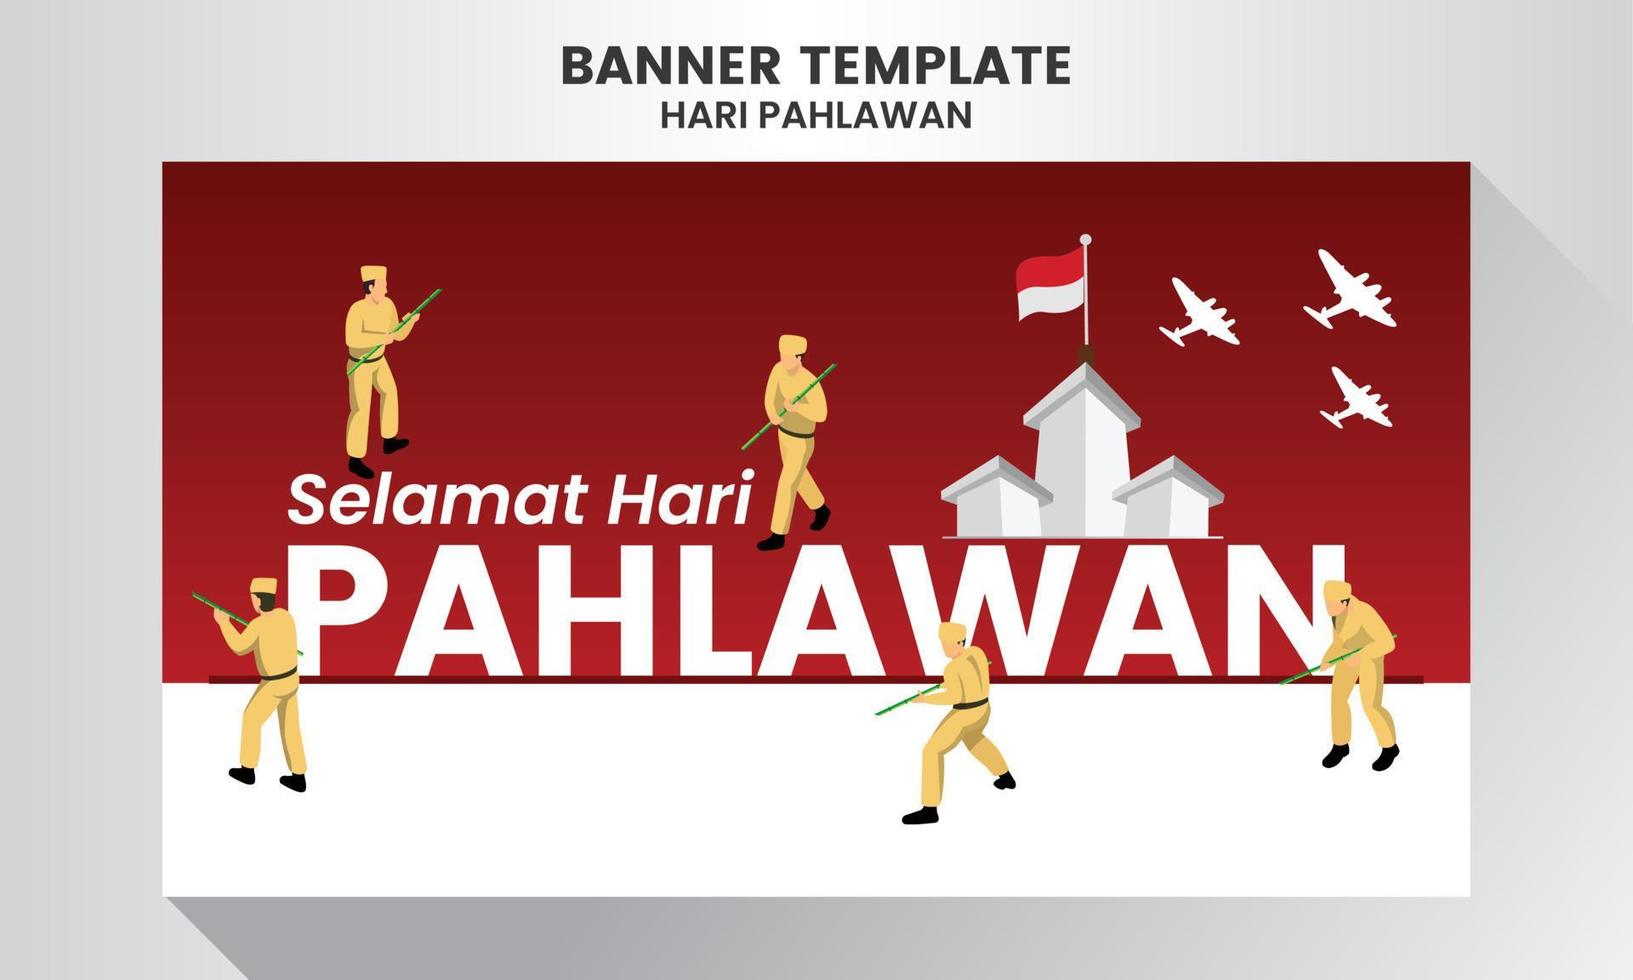 selamat hari pahlawan nasional. traduction bonne journée des héros nationaux indonésiens. illustration vectorielle vecteur